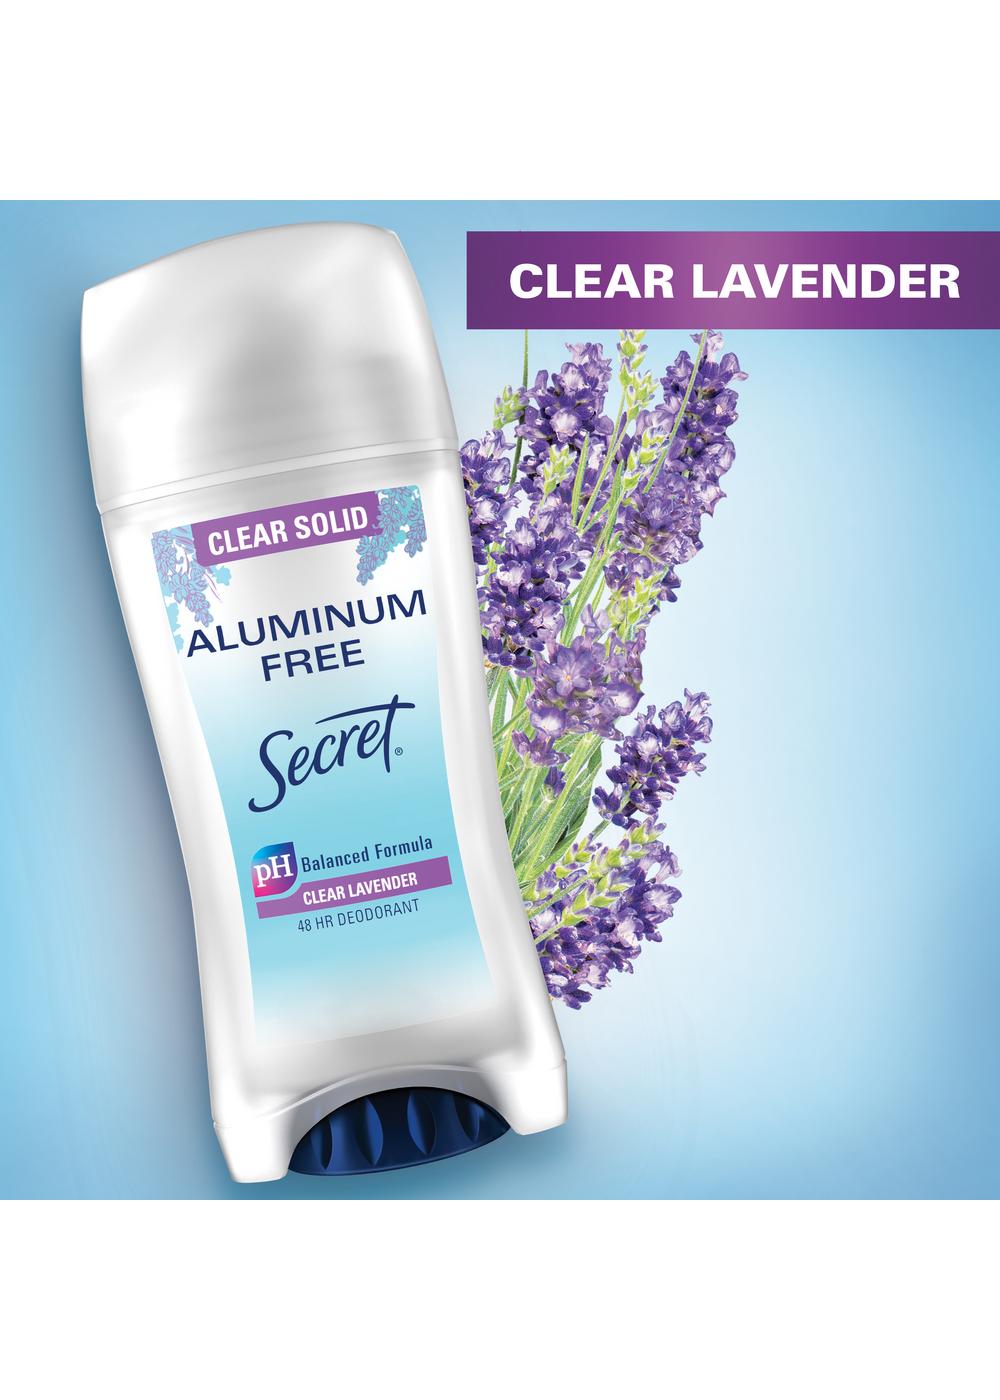 Secret Aluminum Free 48 Hr Deodorant - Lavender; image 3 of 11